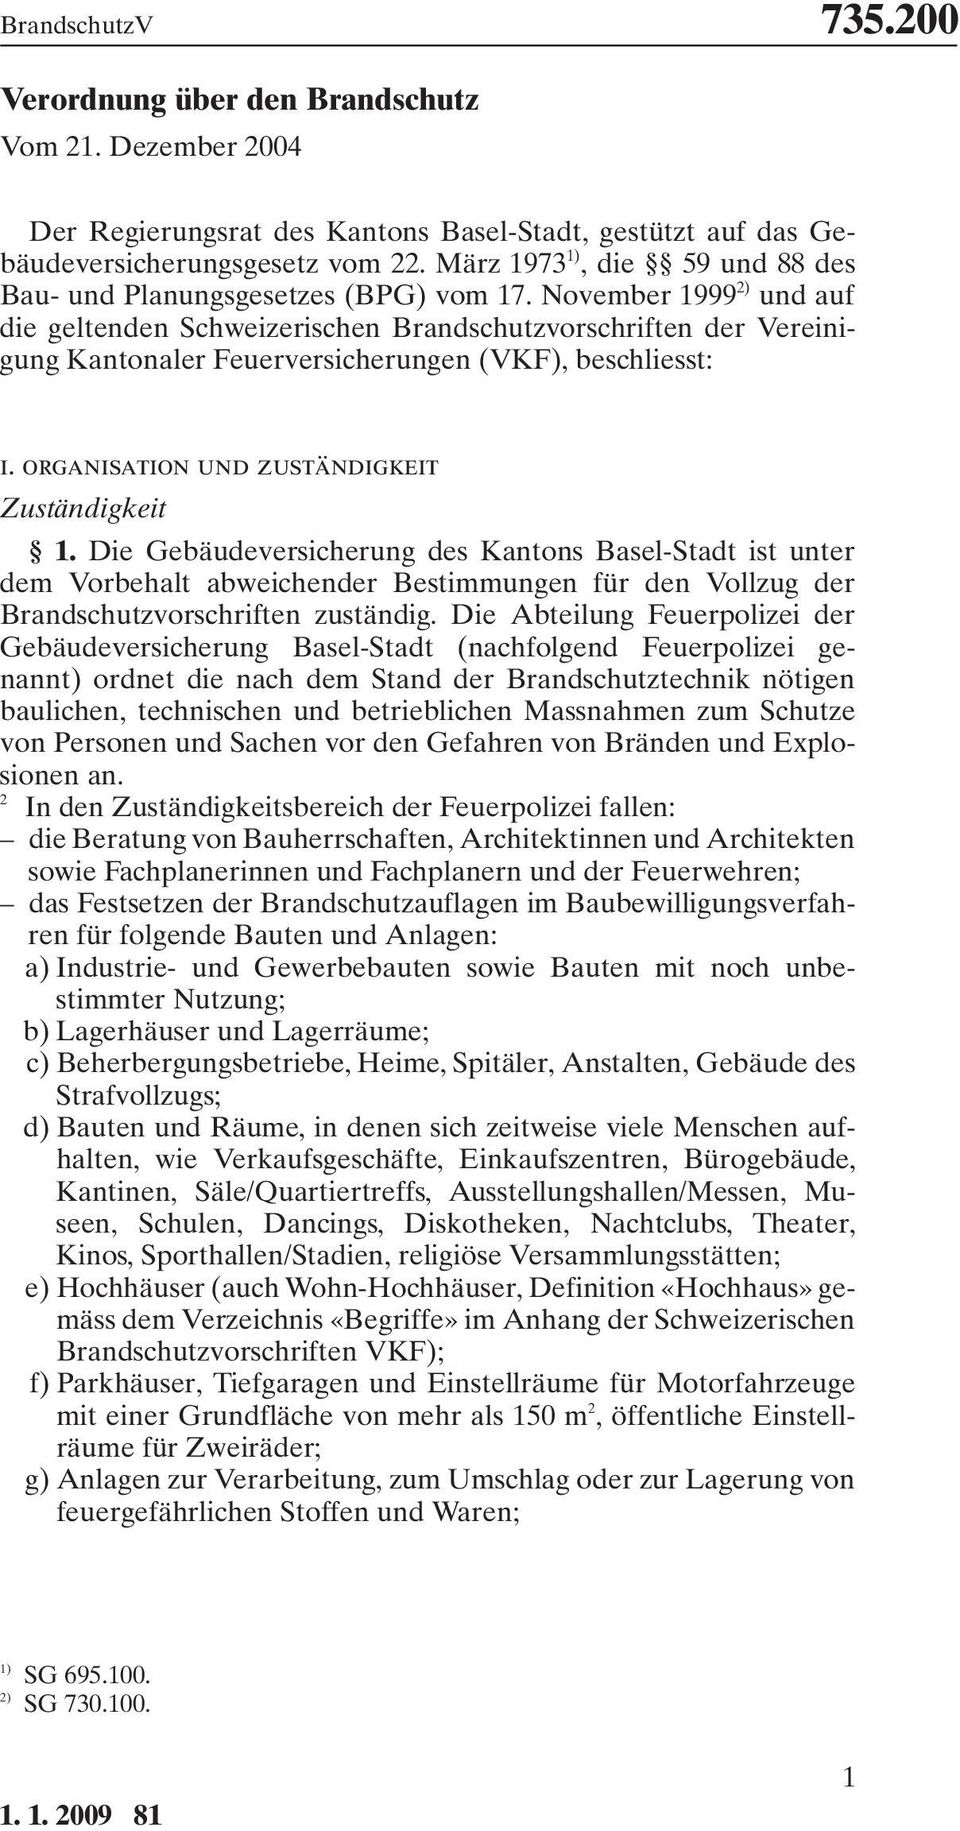 November 1999 ) und auf die geltenden Schweizerischen Brandschutzvorschriften der Vereinigung Kantonaler Feuerversicherungen (VKF), beschliesst: i. organisation und zuständigkeit Zuständigkeit 1.